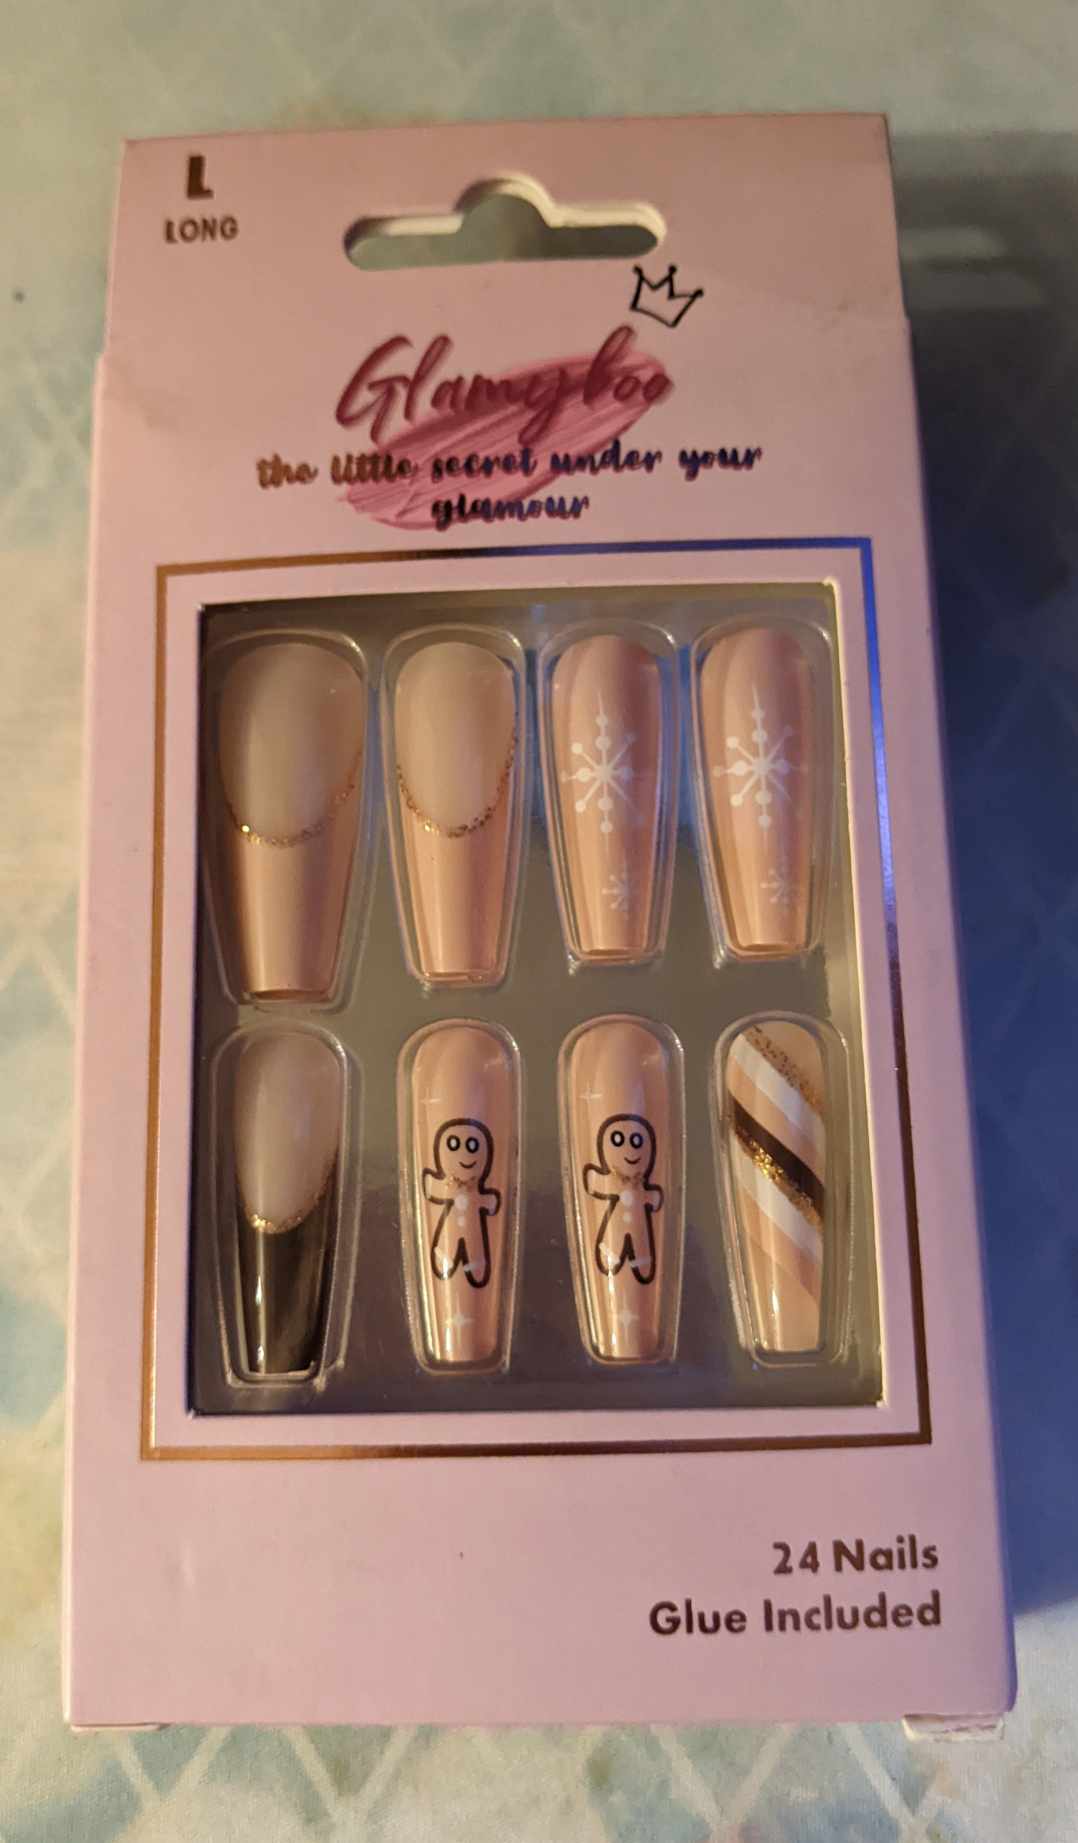 Glamyboo nails (Gingerbread)